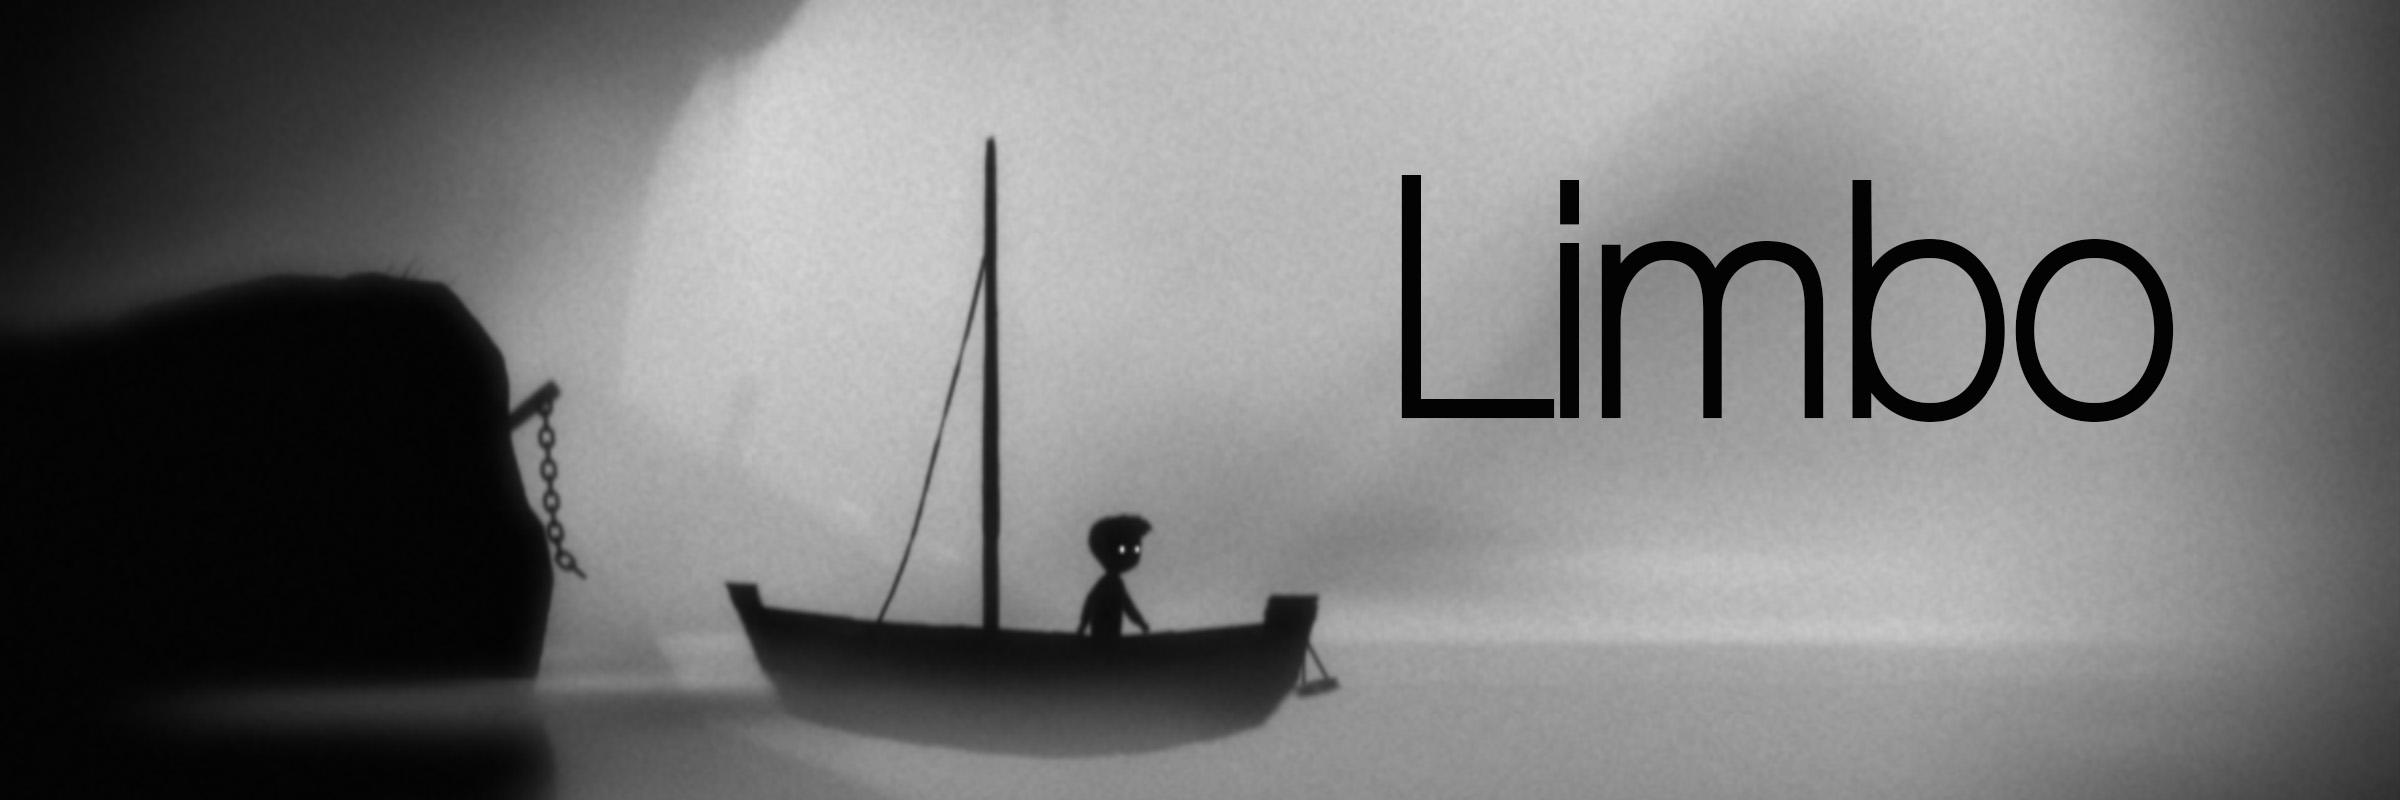 Screenshot aus dem Spiel Limbo; zeigt kleinen jungen, der auf einem Segelboot fährt; über dem Bild steht die Überschrift "Limbo"